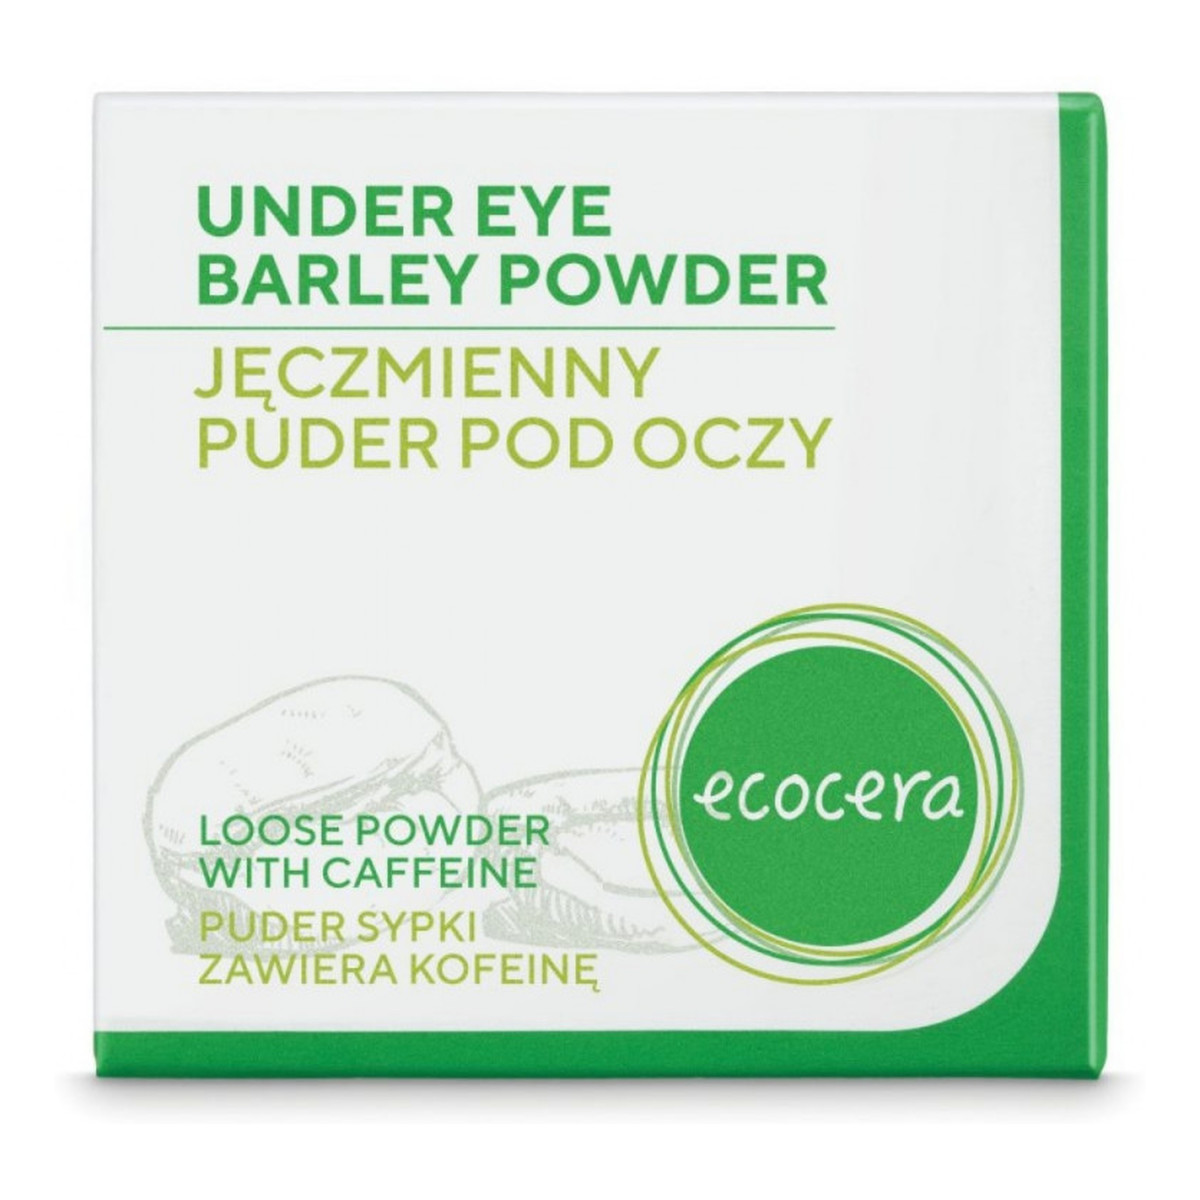 Ecocera Under Eye Barley Powder jęczmienny puder pod oczy 4g